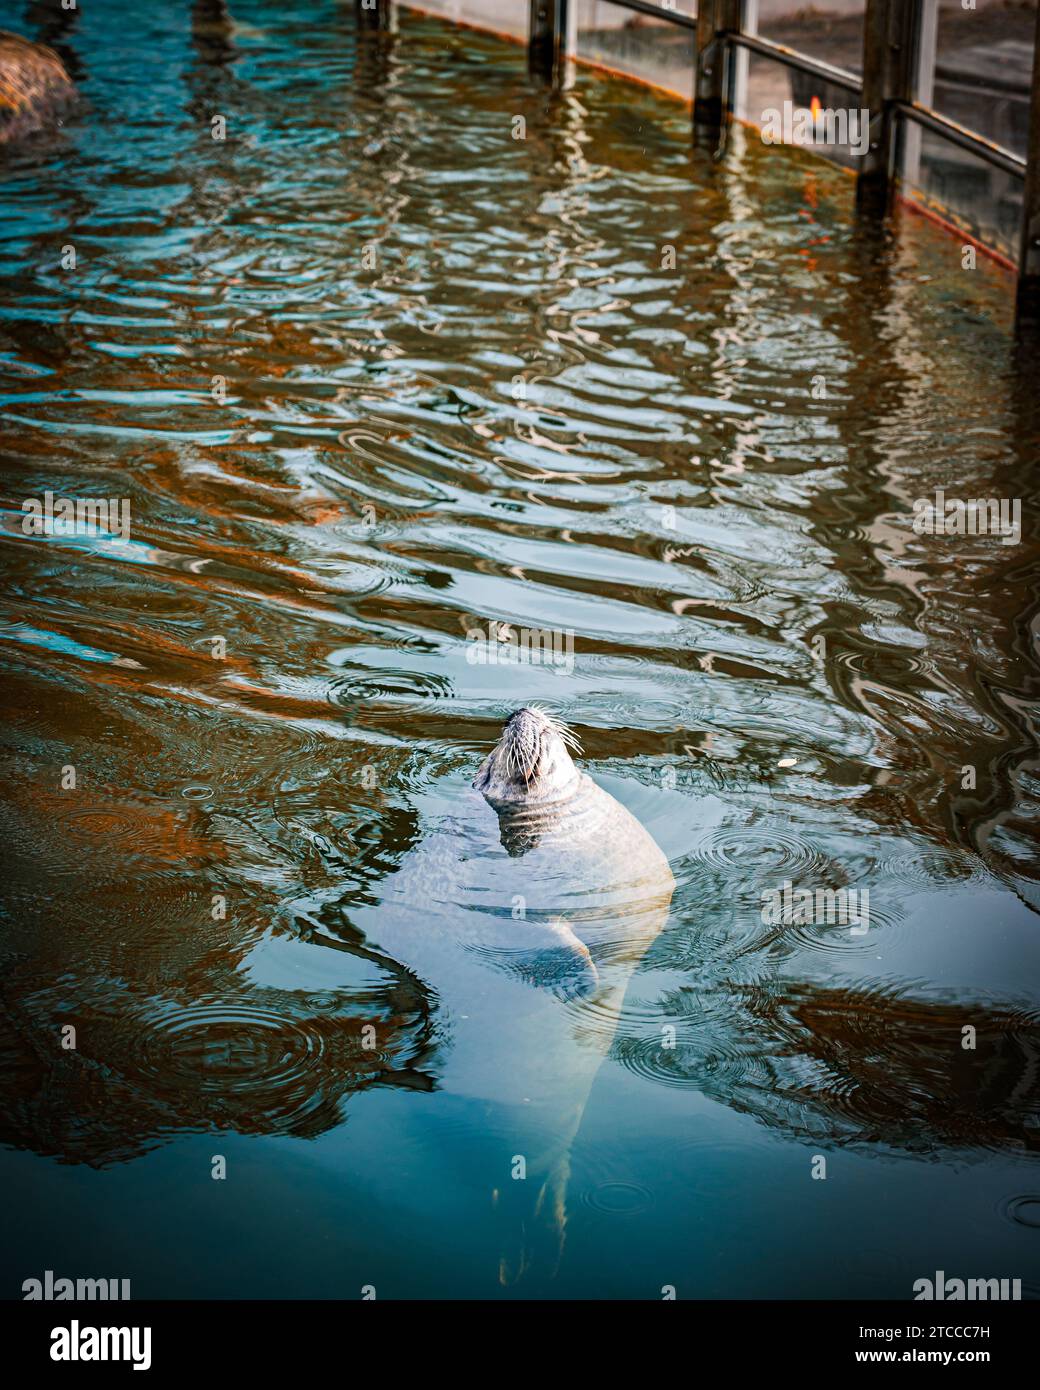 Ein majestätischer weißer Eisbär, der anmutig in einem großen, transparenten Wasserbecken schwimmt, das sich in der Nähe eines hölzernen Docks befindet Stockfoto